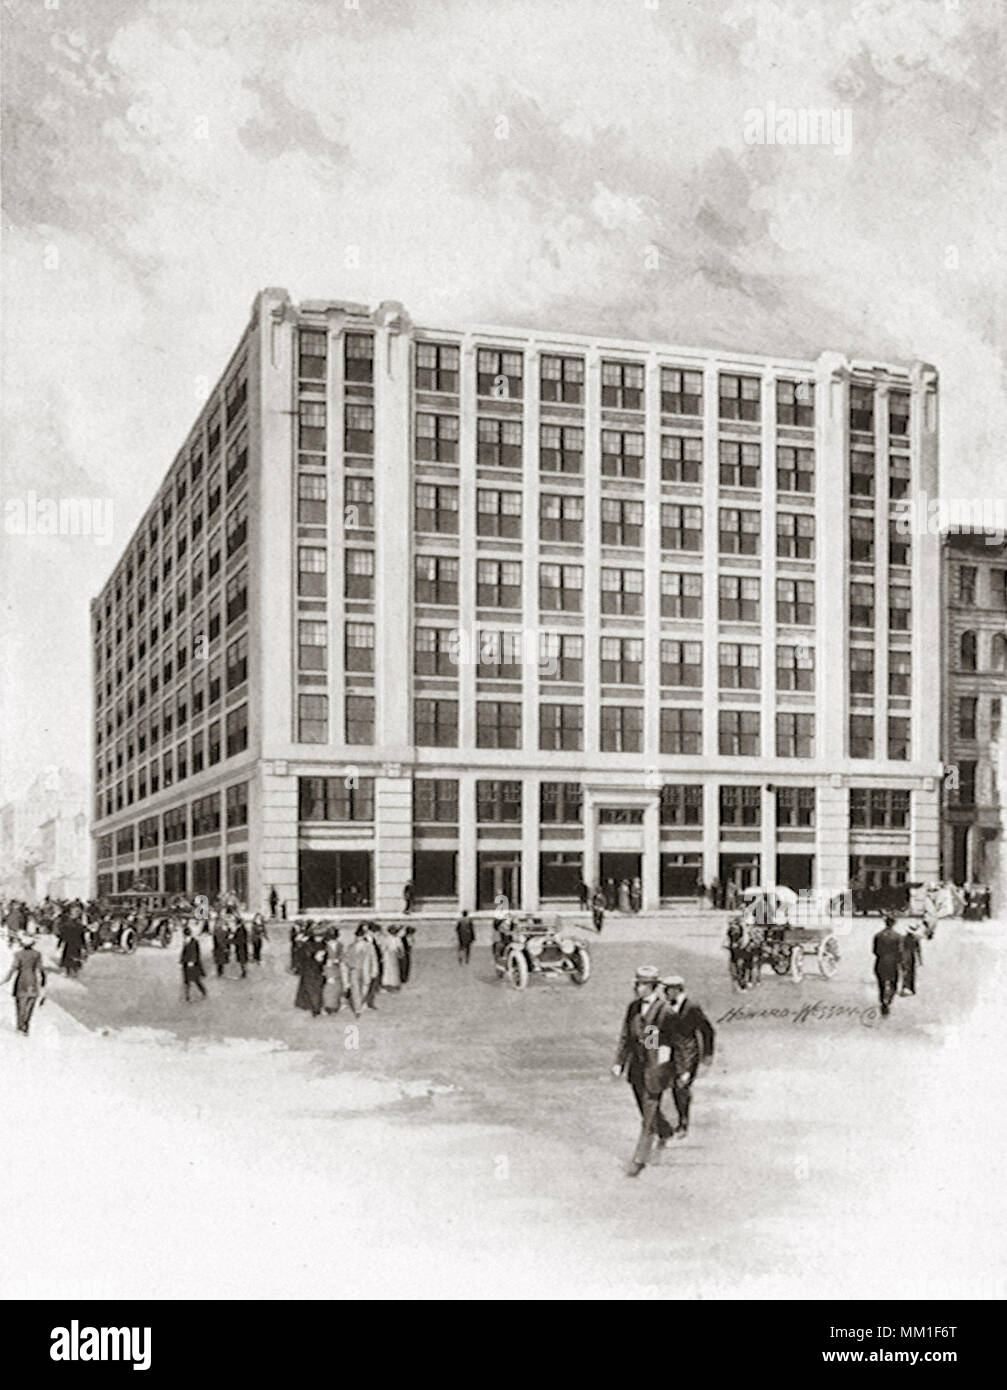 Bâtiment des arts graphiques. Worcester. 1910 Banque D'Images